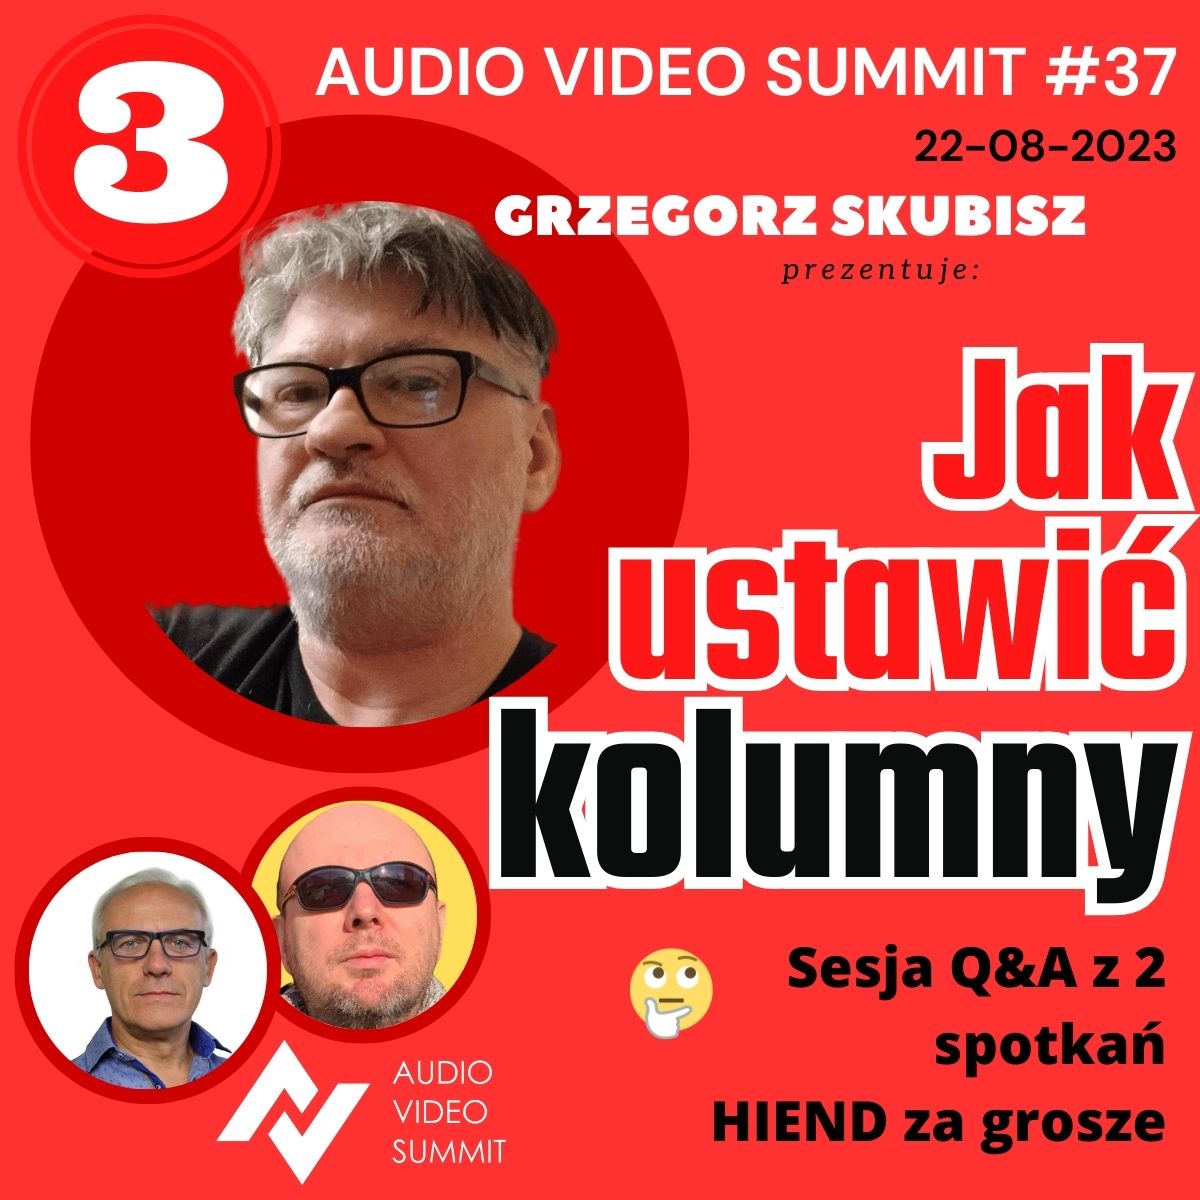 Audio Video Summit #37: Jak ustawić kolumny